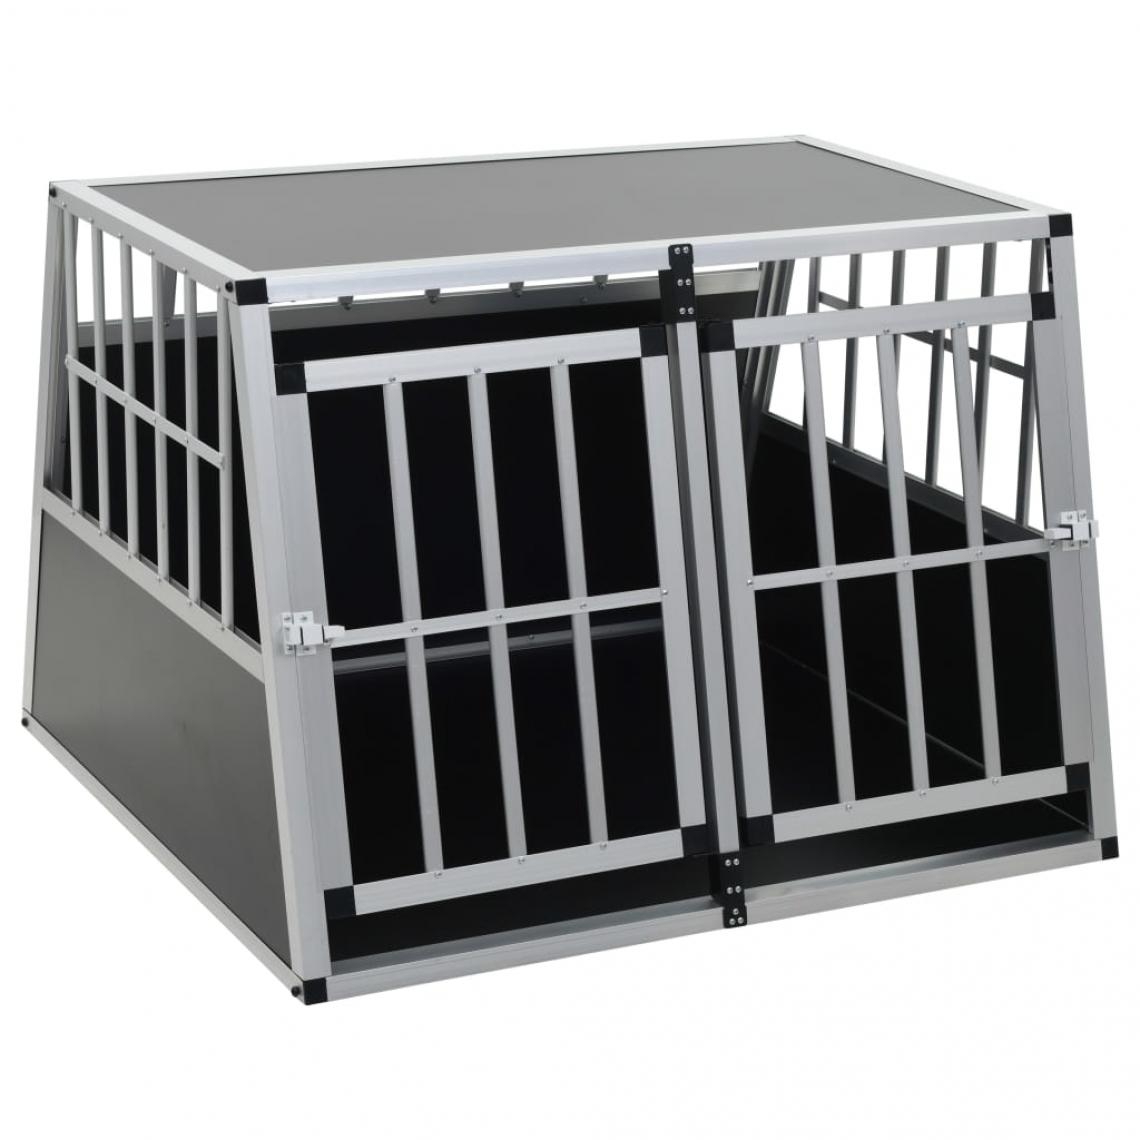 Helloshop26 - Cage pour chien à double porte 94 x 88 x 69 cm aluminium et MDF noir 02_0000064 - Equipement de transport pour chat